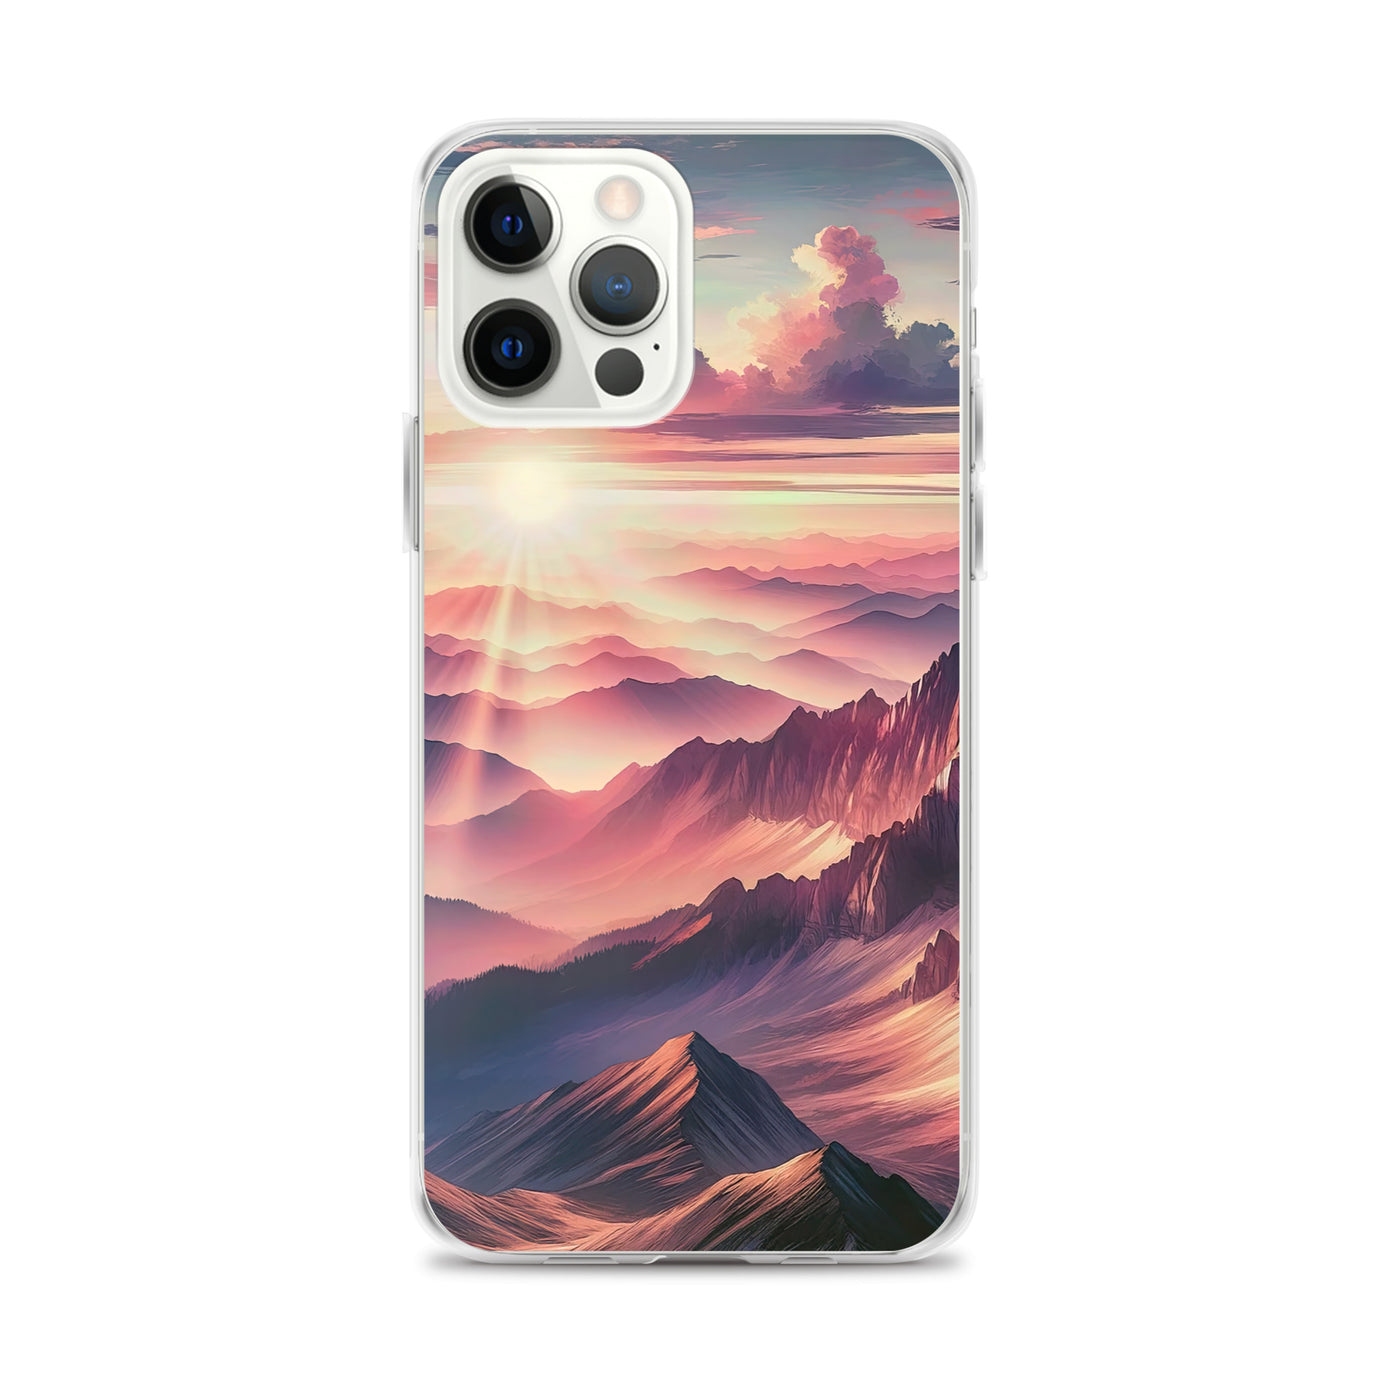 Schöne Berge bei Sonnenaufgang: Malerei in Pastelltönen - iPhone Schutzhülle (durchsichtig) berge xxx yyy zzz iPhone 12 Pro Max